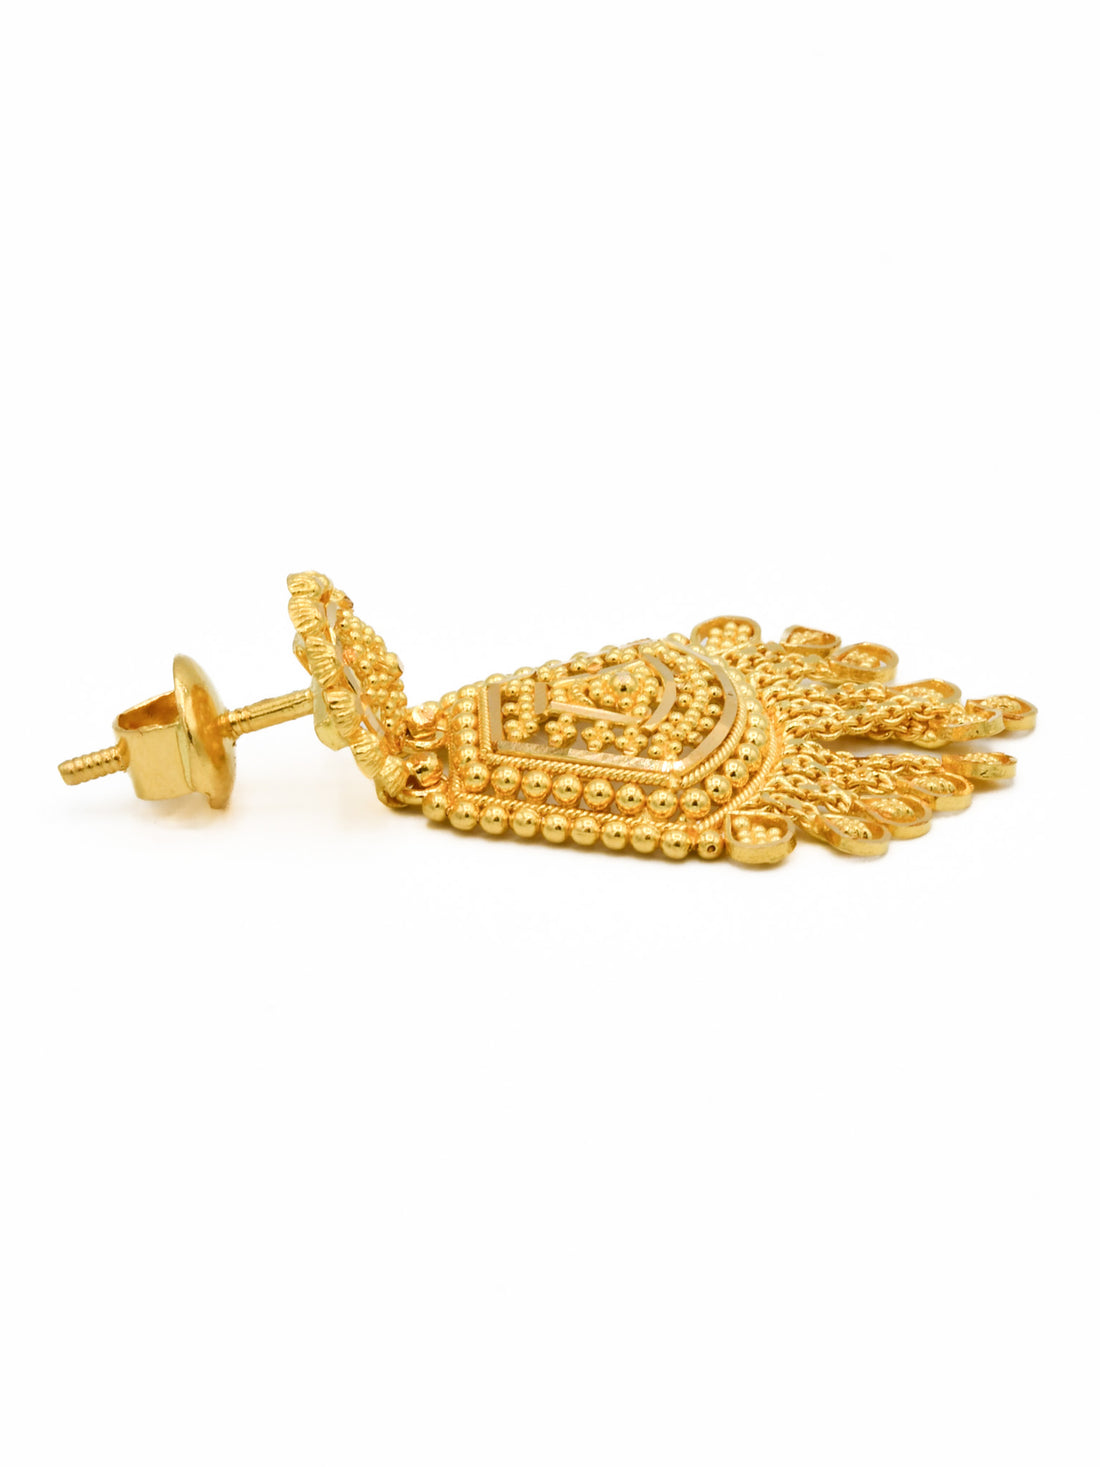 22ct Gold Filigree Earrings - Roop Darshan